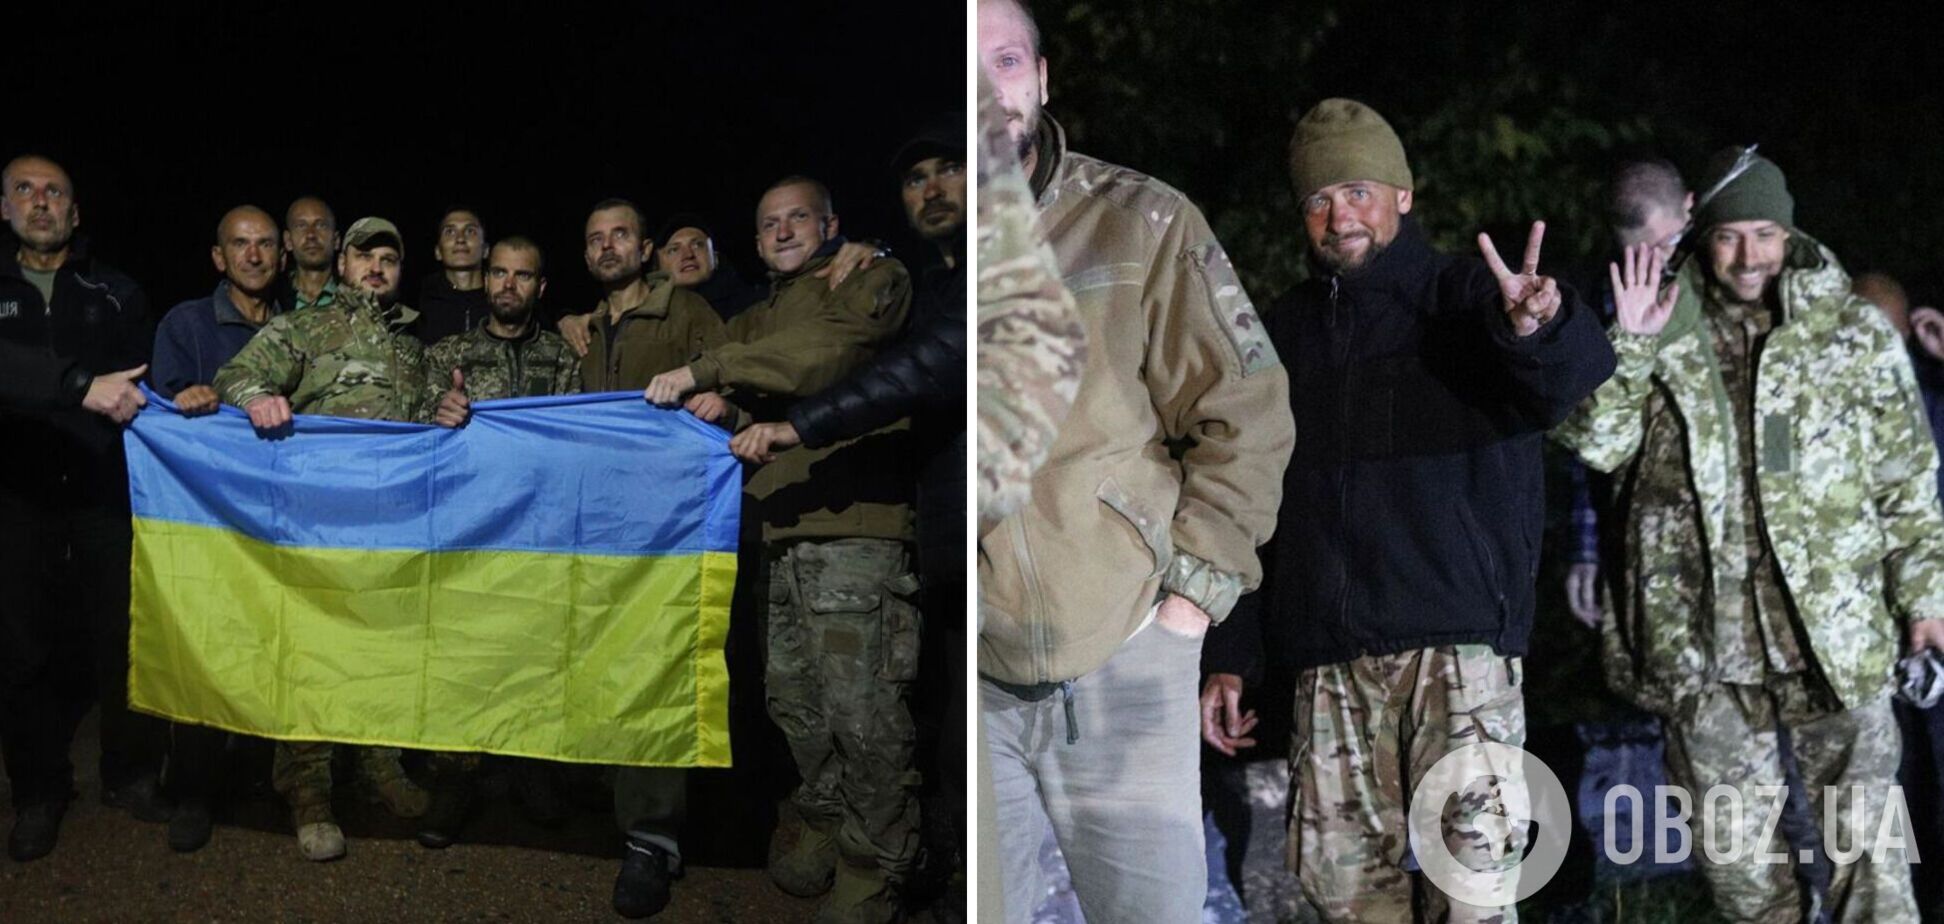 Объятия, улыбки и слезы радости: в СБУ показали фото возвращения украинских военных из плена